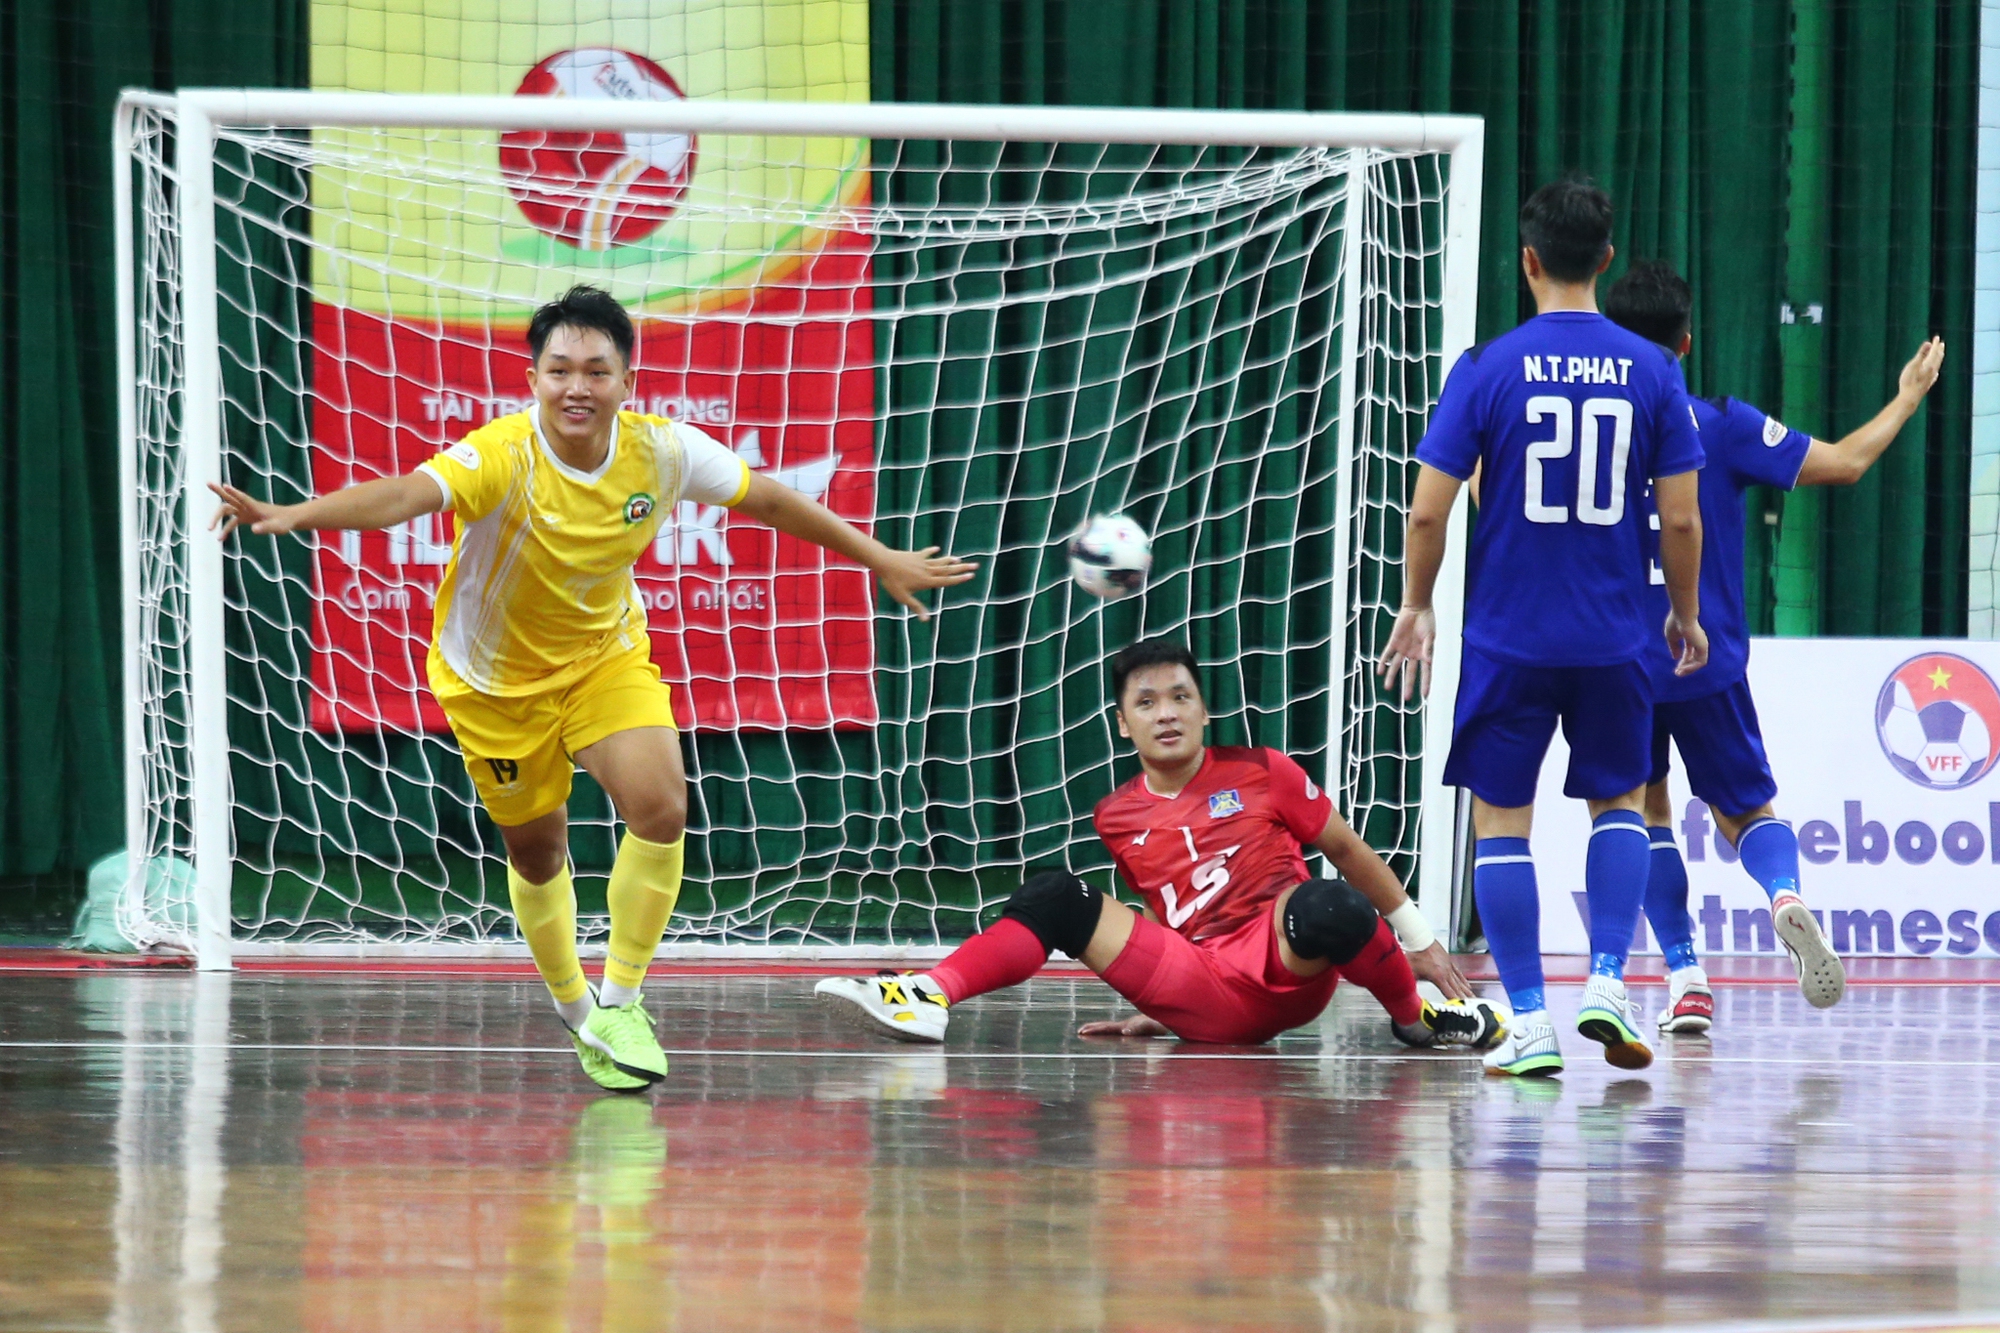 Hồ Văn Ý và cầu thủ futsal Thái Sơn Nam buồn bã khi về nhì ở Cúp Quốc gia - Ảnh 2.